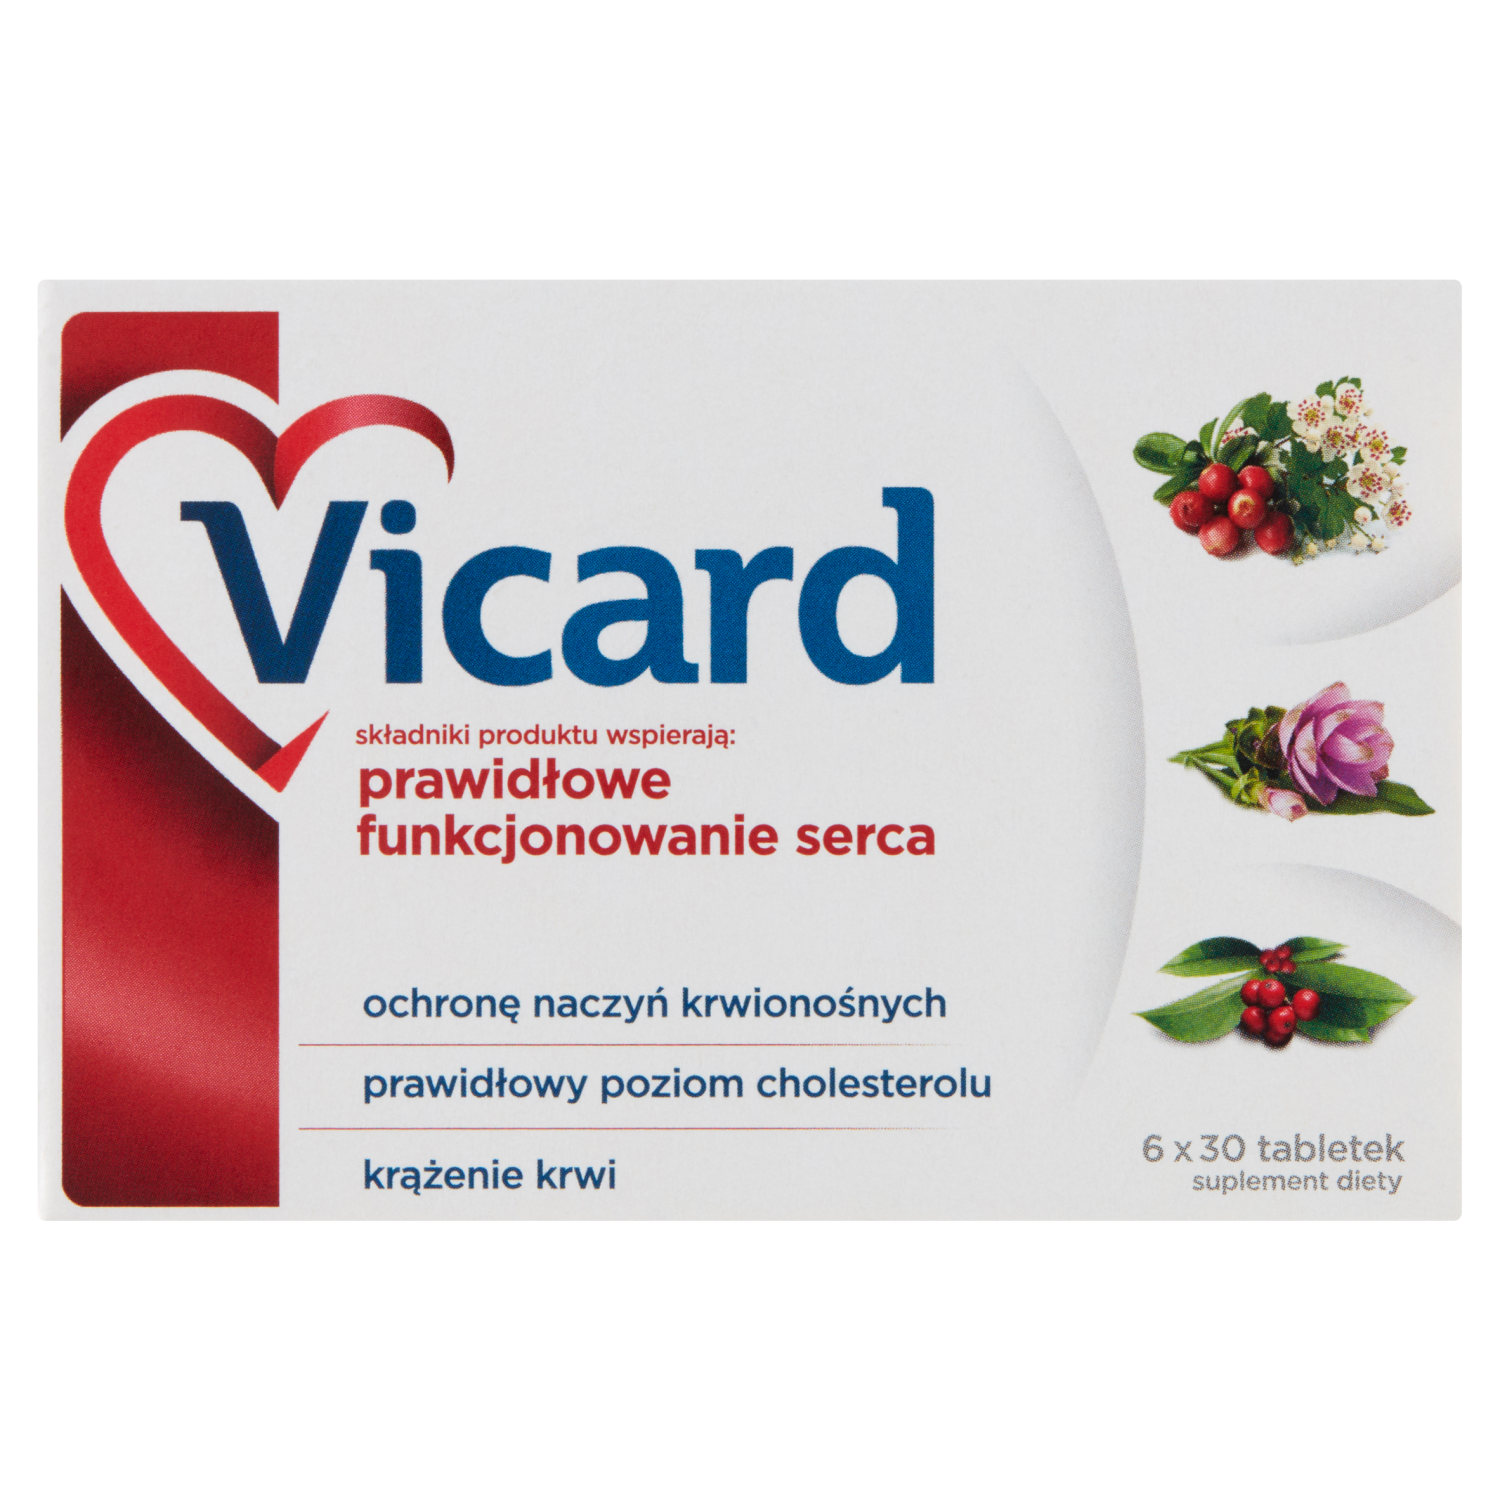 Vicard биологически активная добавка, 180 таблеток/1 упаковка биологически активная добавка leaftogo сollagen 180 гр